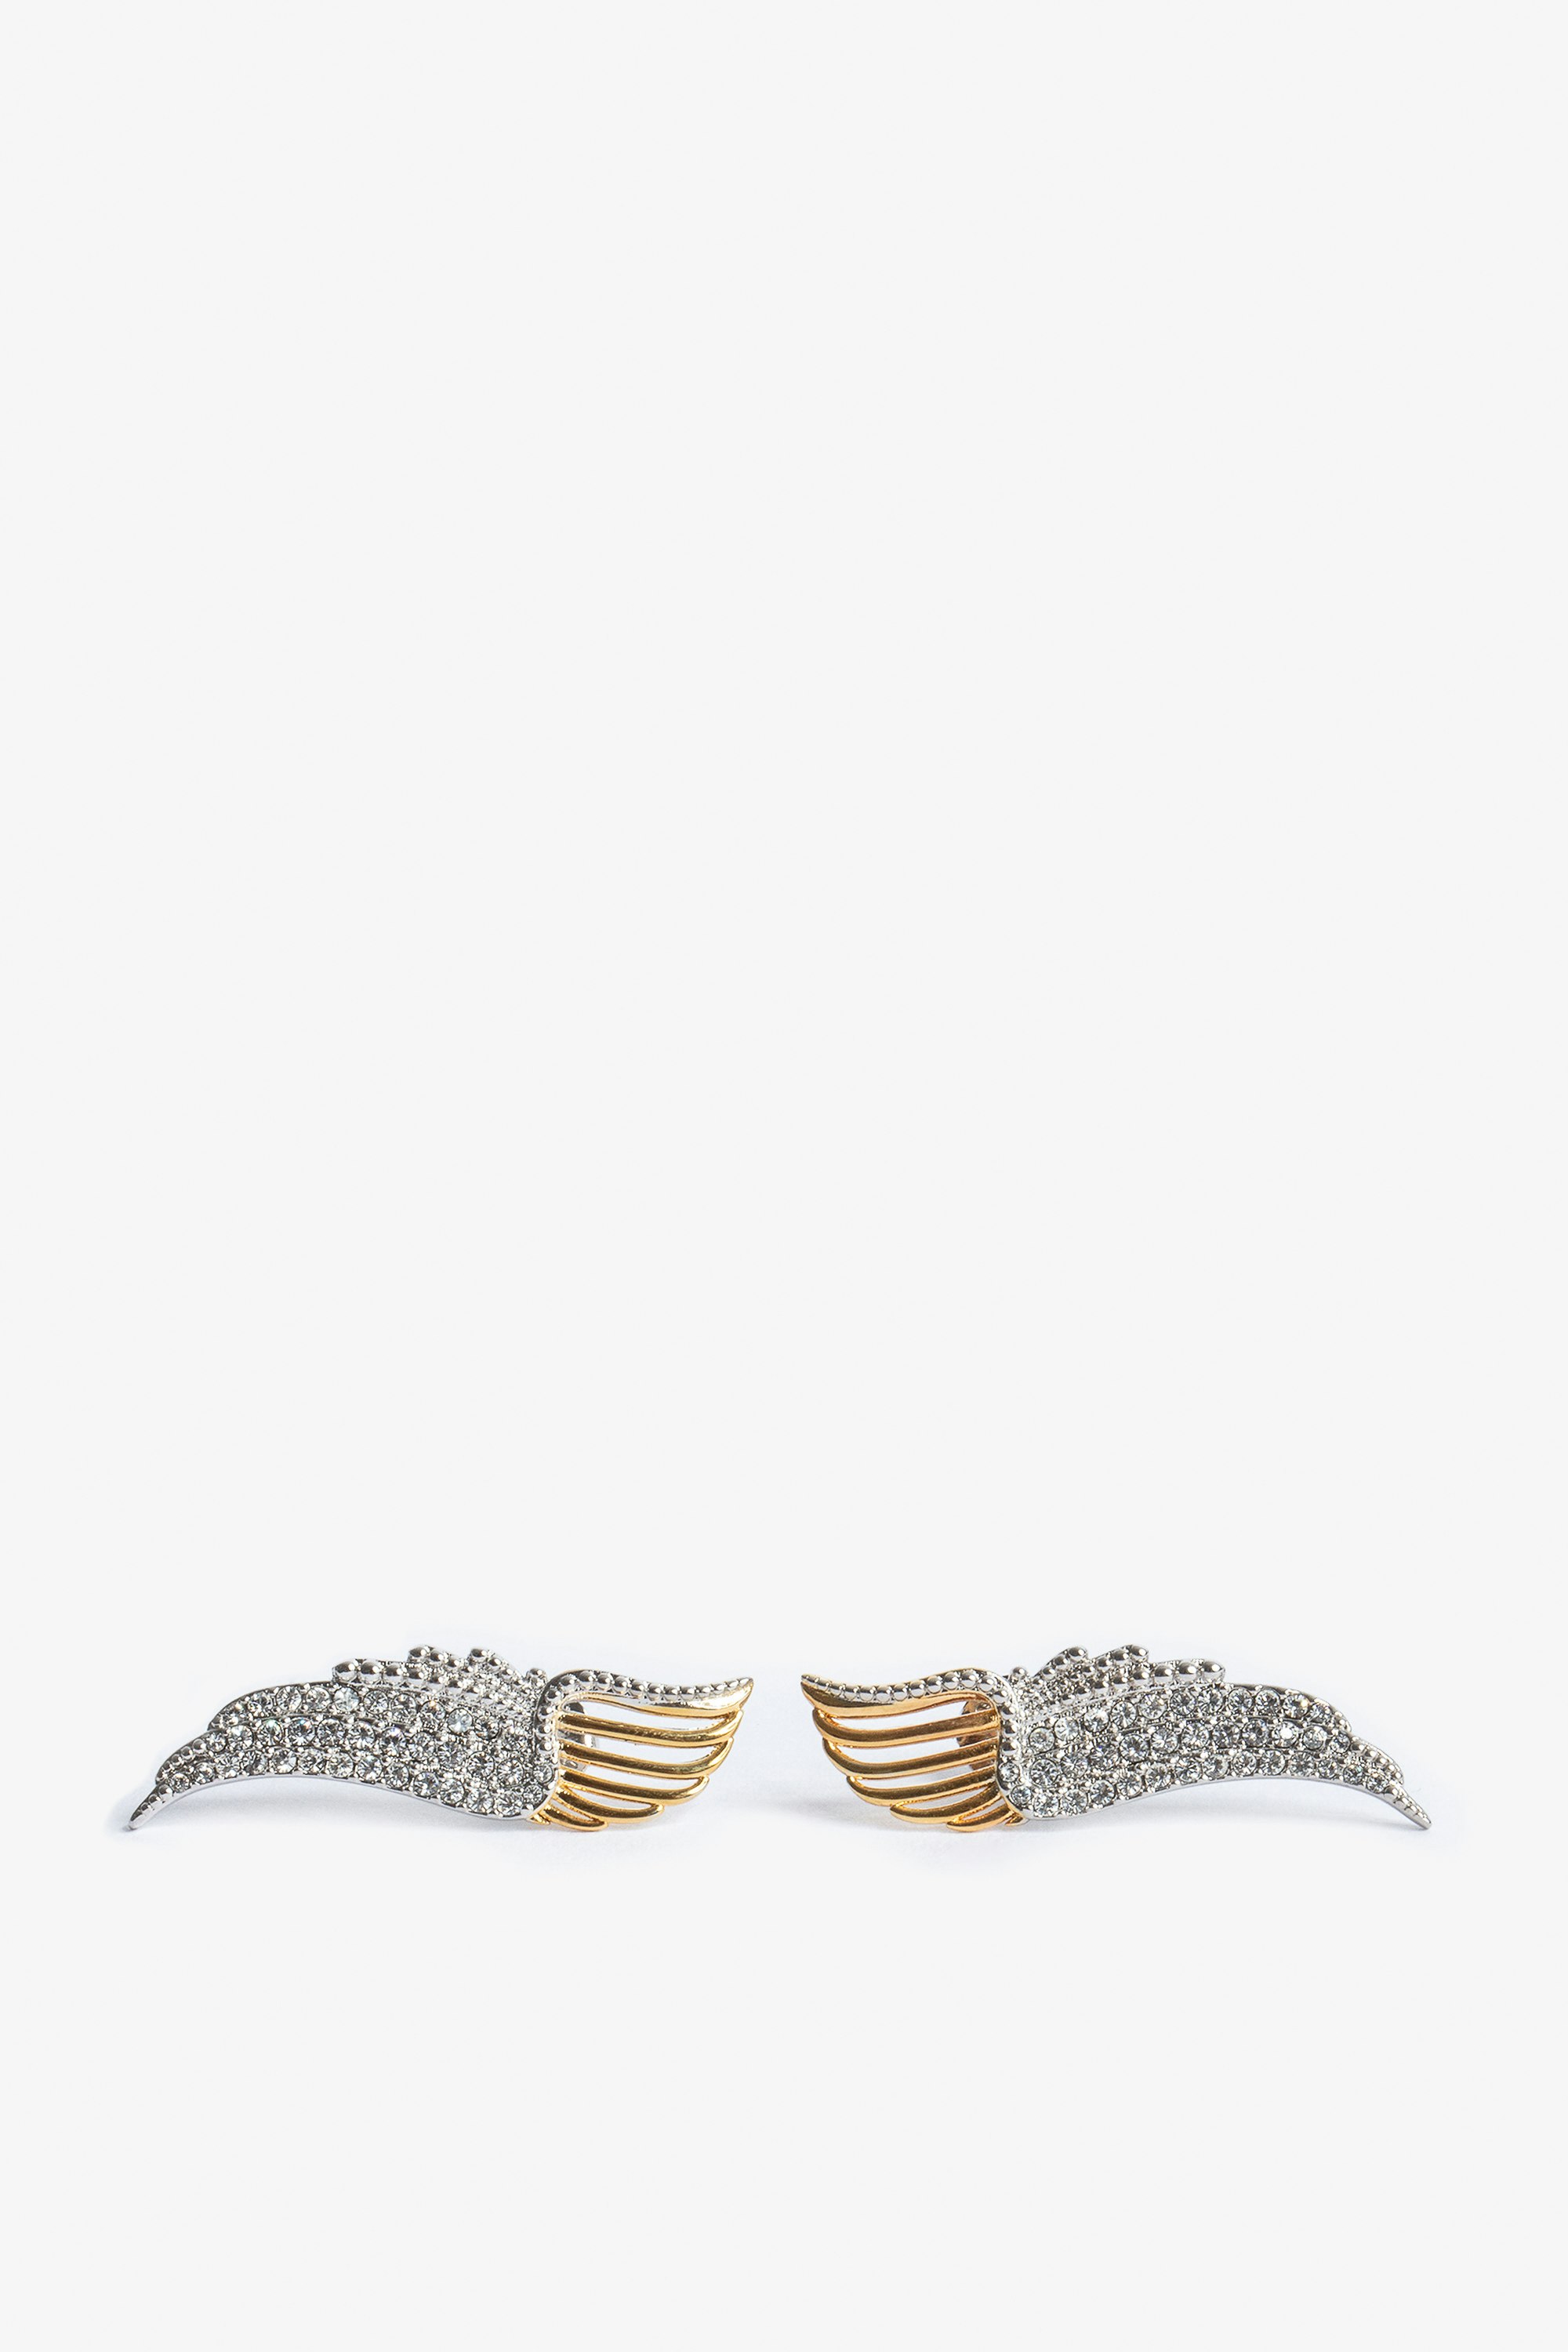 Boucle D'oreilles Rock Over - Boucles d'oreilles en forme d'ailes en métal doré et serties de cristaux.